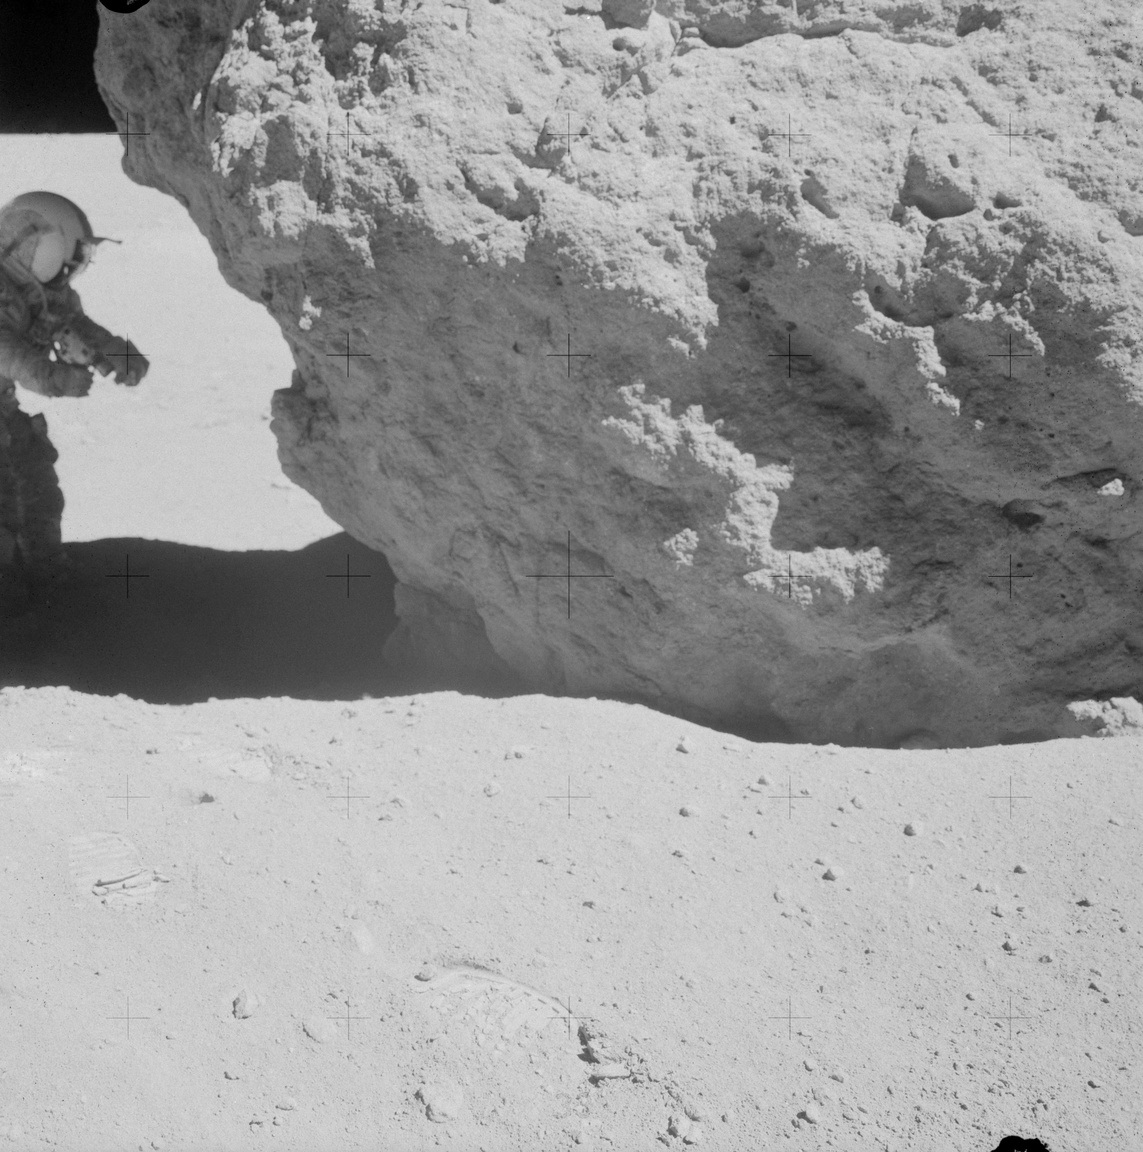 1972. április 23. John W. Young egy nagyobbacska holdszikla társaságában. Mikor Young a szikla alól, az állandó árnyékból gyűjtött holdpormintát, Duke rászólt: "Otthon, Texasban most csörgőkígyót találtál volna ott".
                        